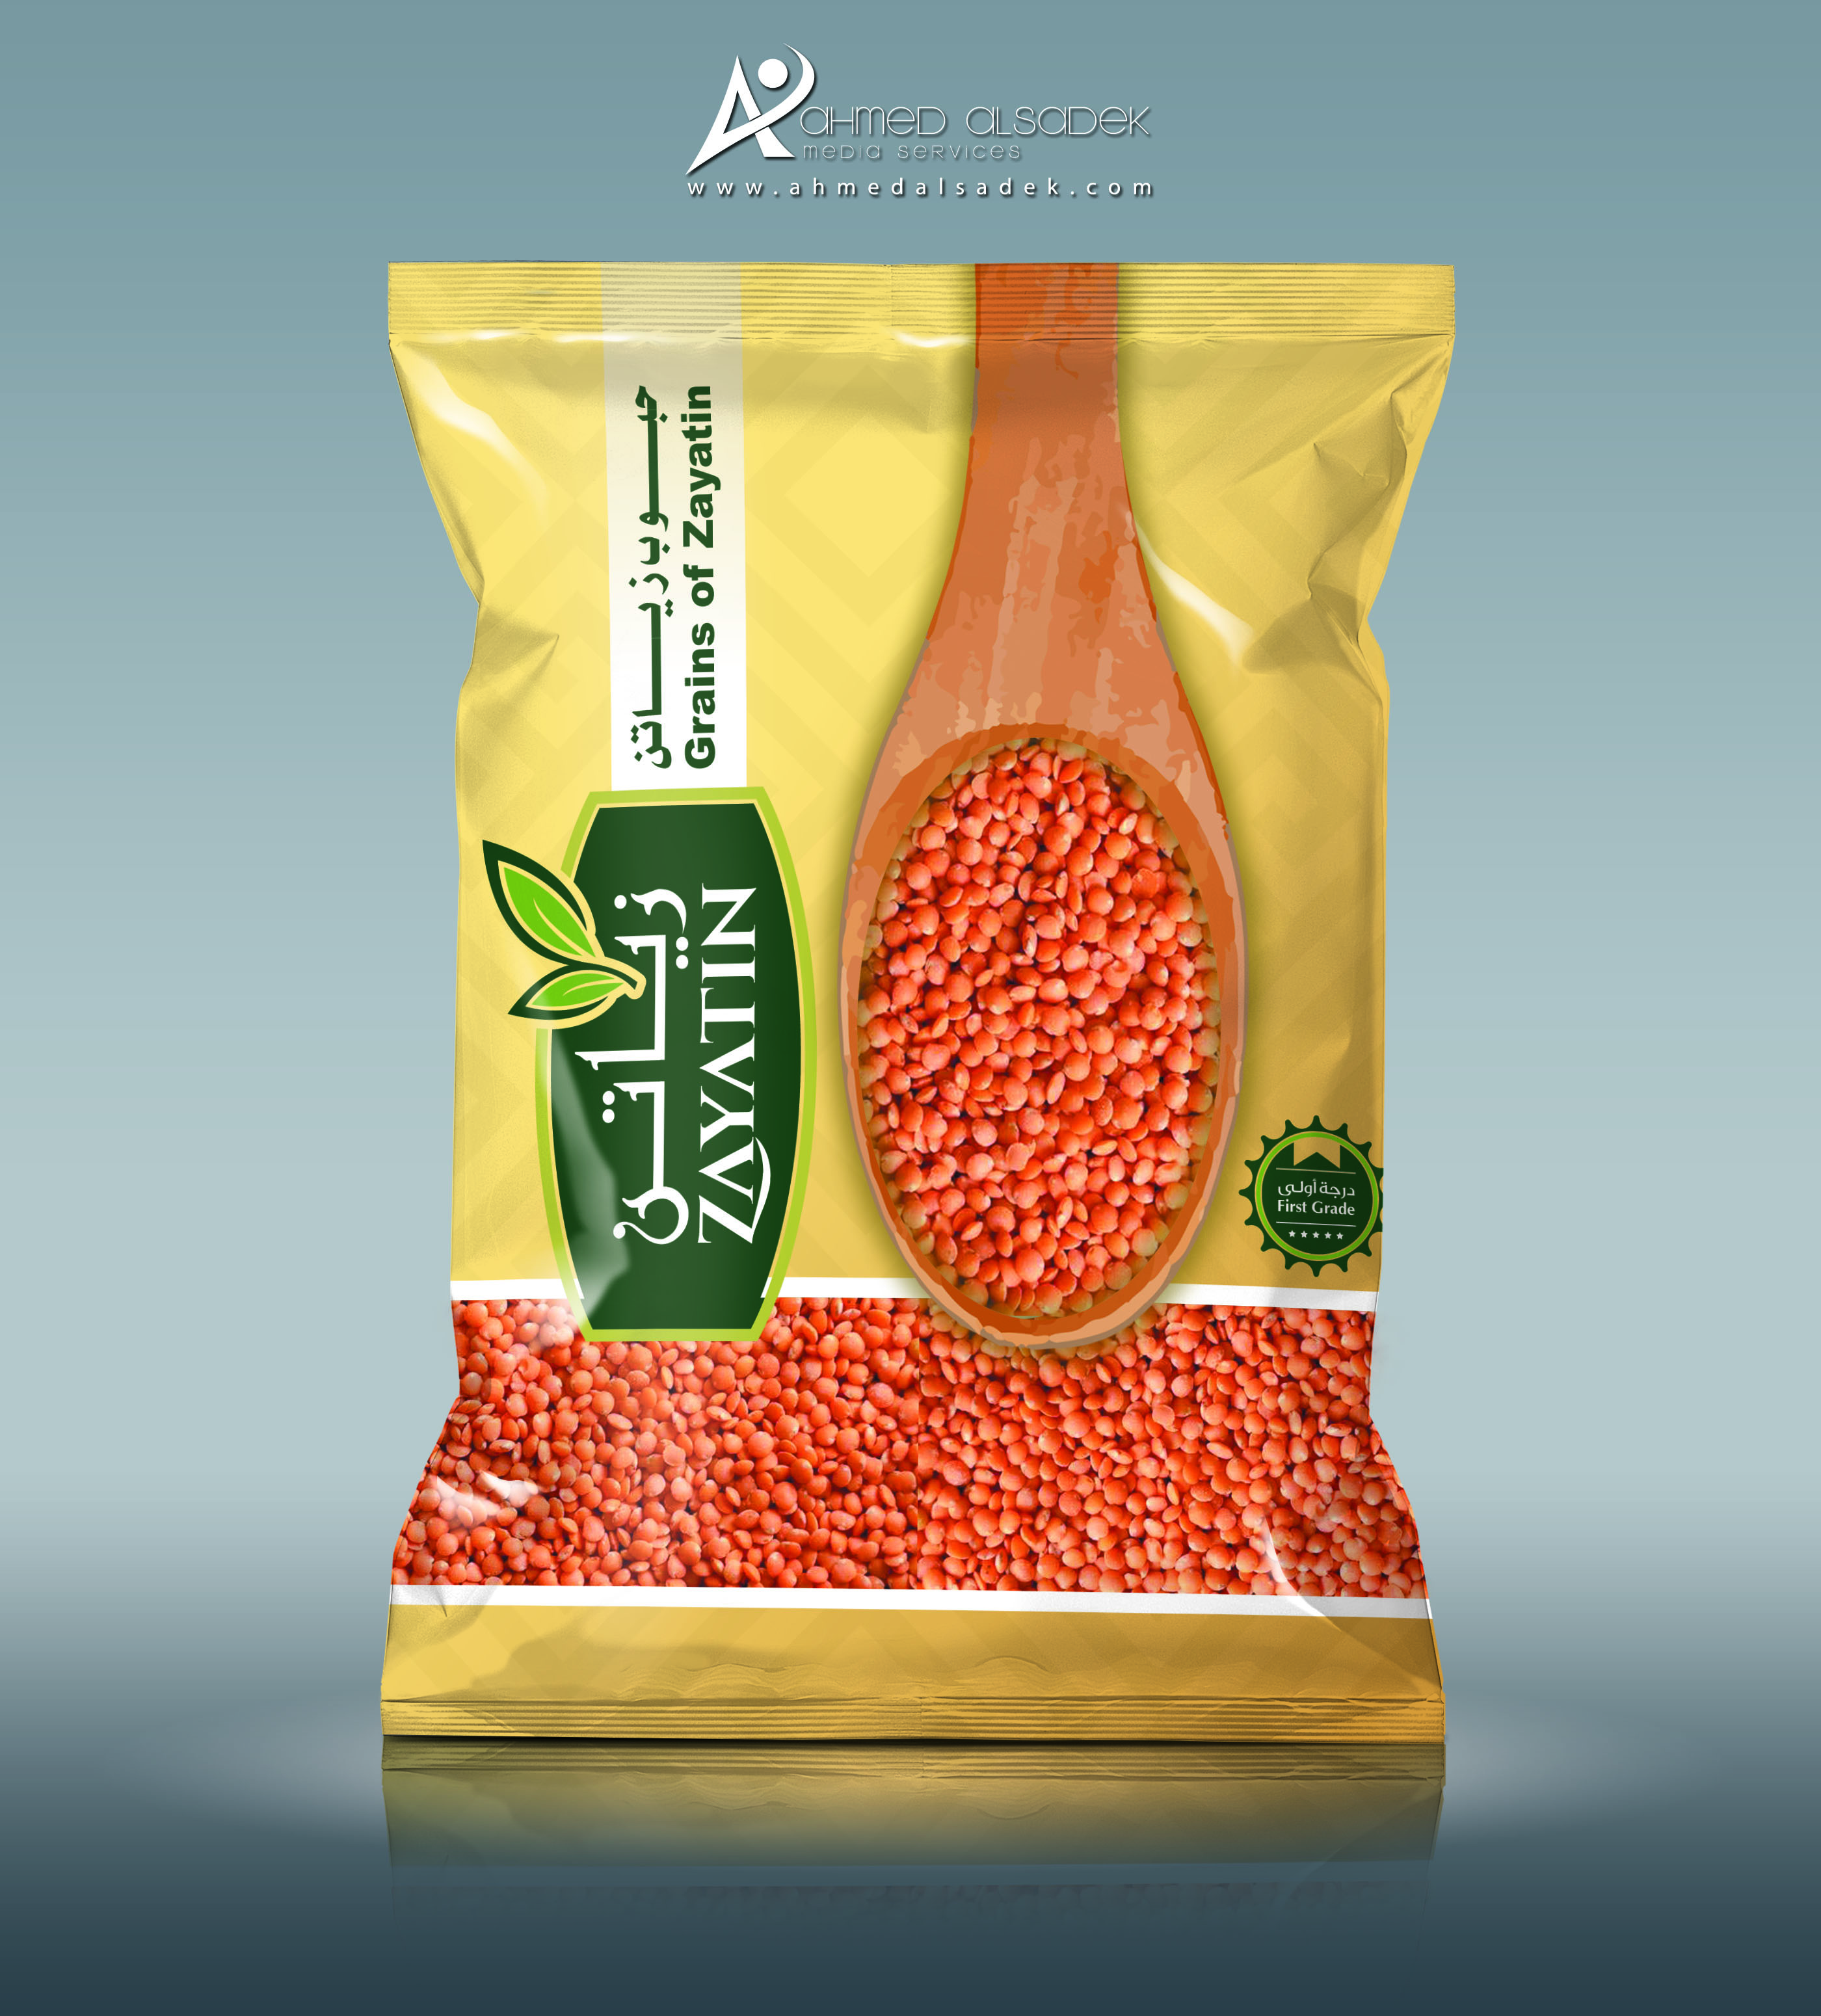 تصميم أكياس منتجات غذائية لشركة زياتن فى الدمام - السعودية 